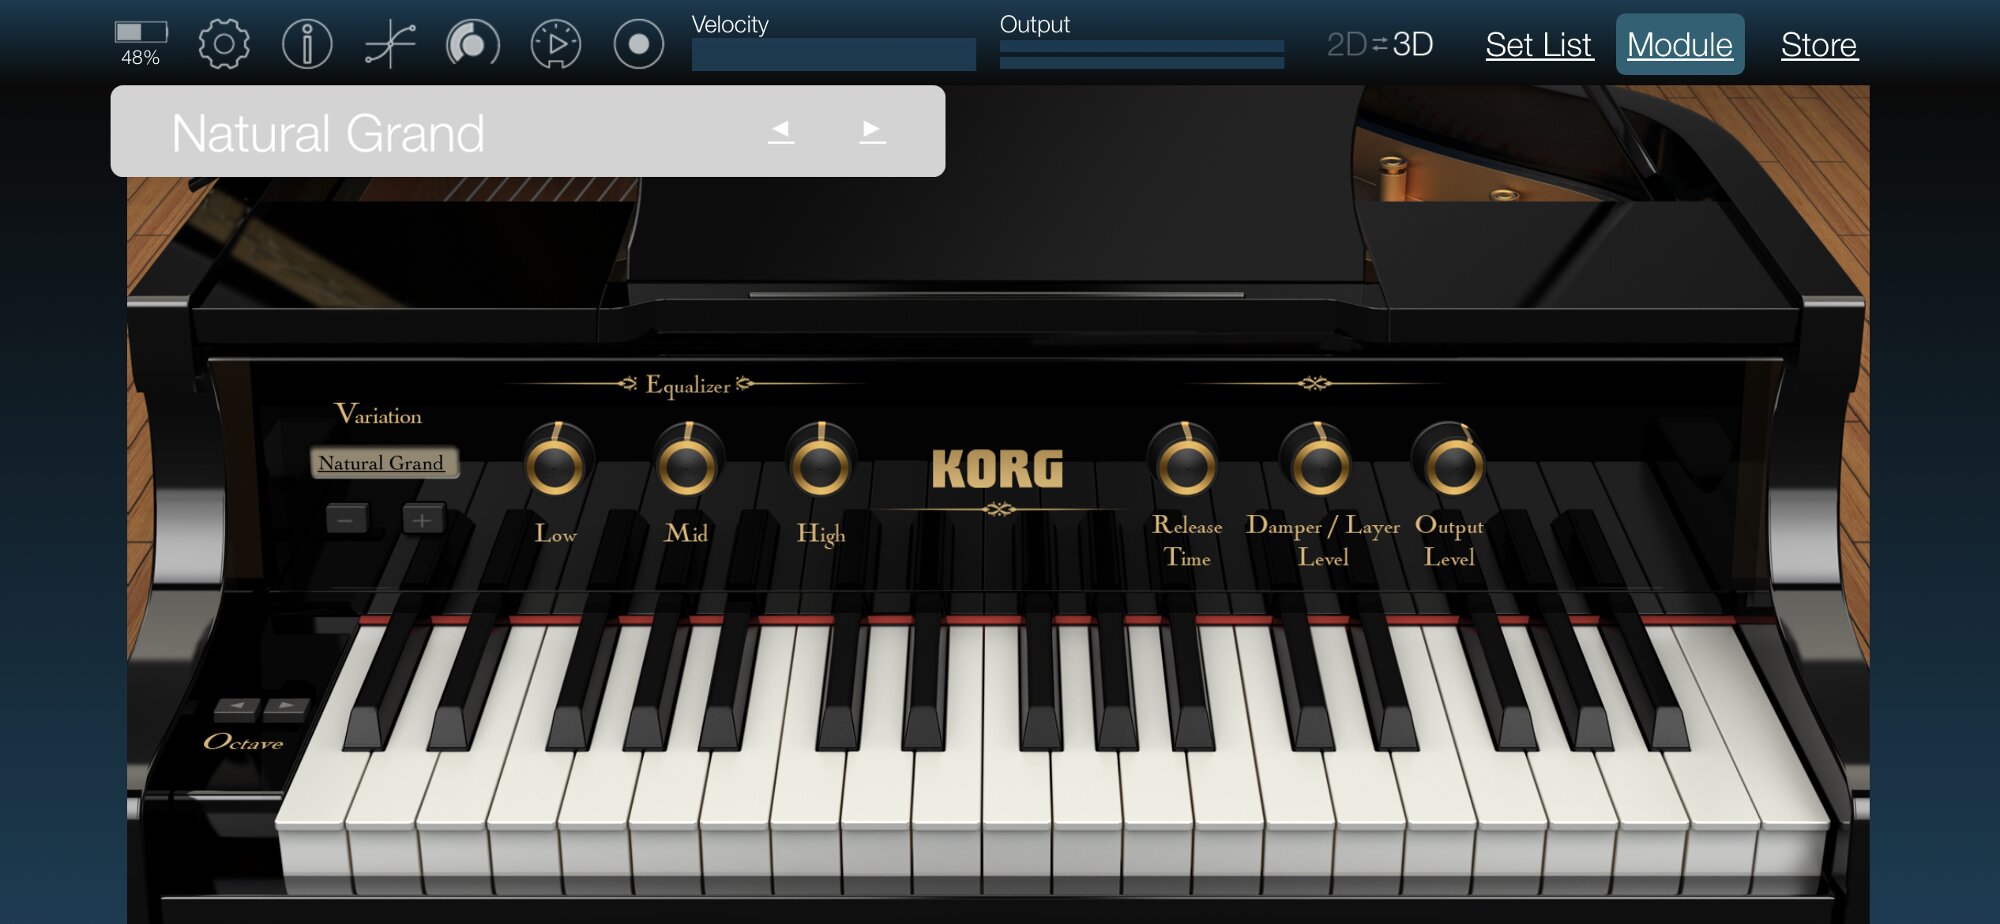 KORGの専用iPhoneアプリ。これだけでも音は出せる。ただし画面のサイズの制約があり、これですらすら音を出す感じではない。